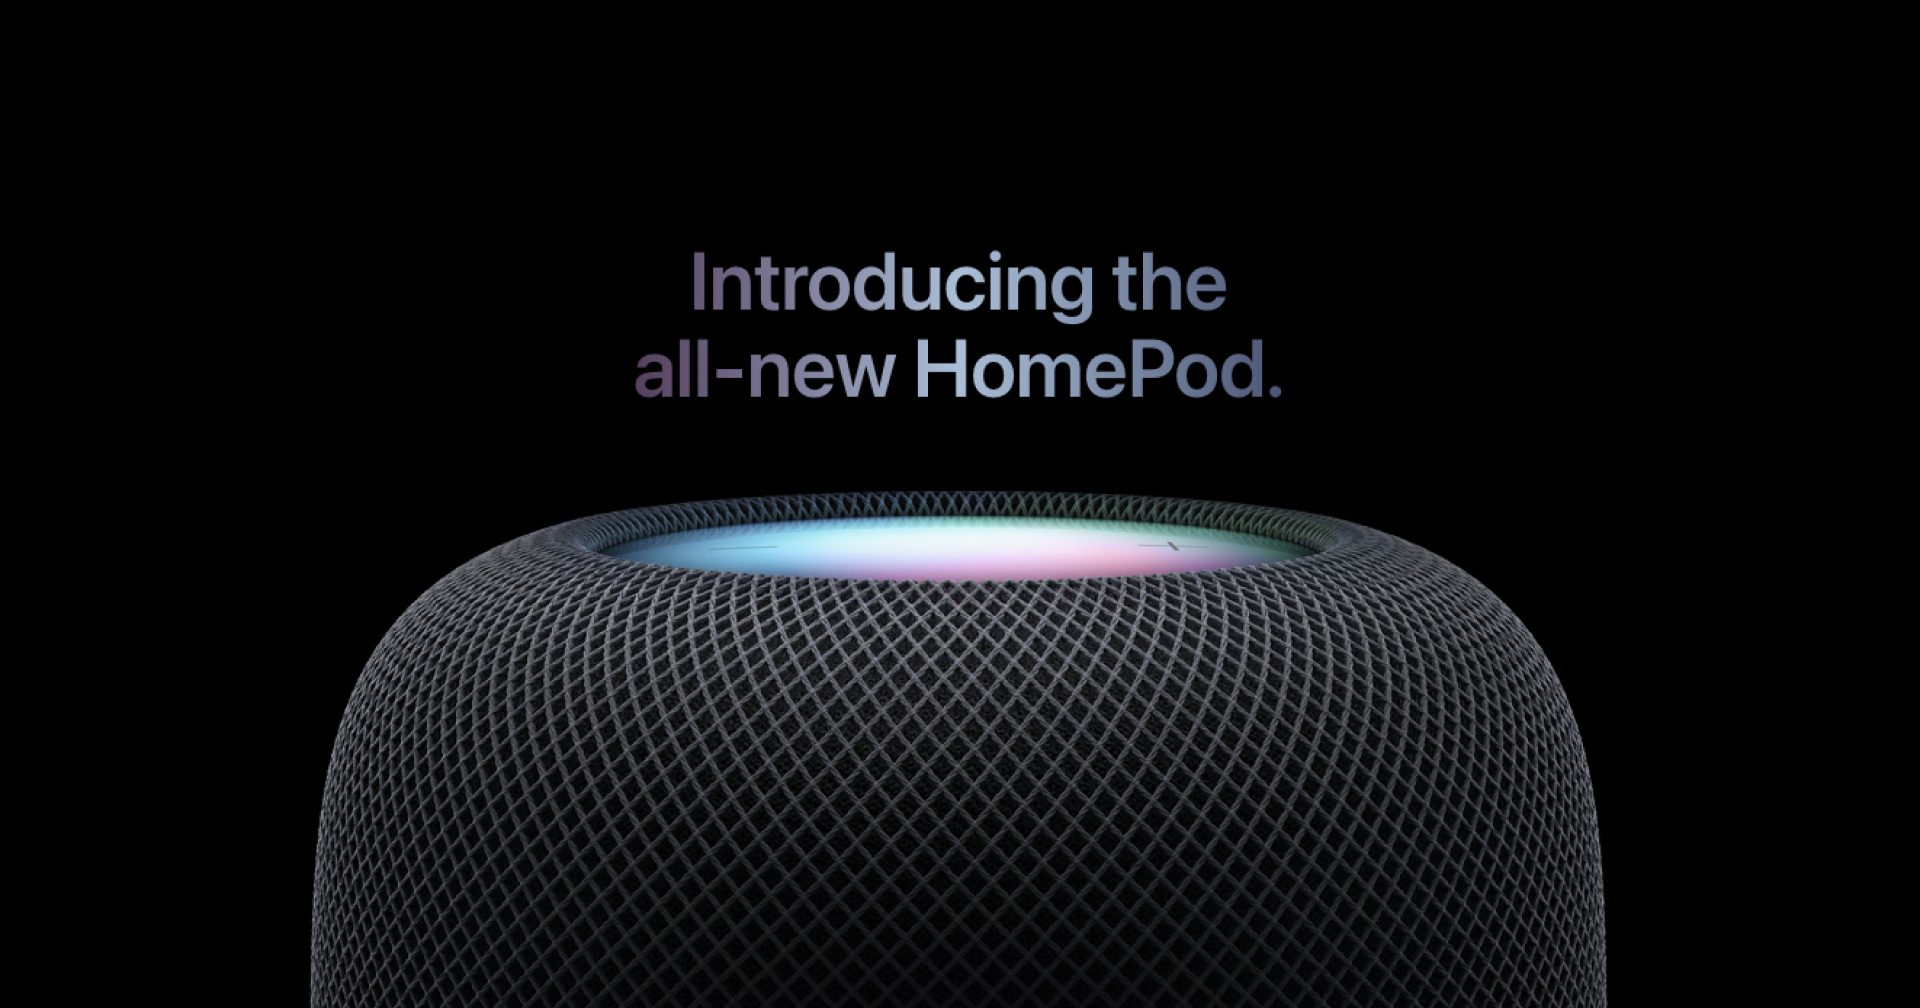 เปิดตัว HomePod รุ่นใหม่ ลำโพงอัจฉริยะพร้อมคุณภาพเสียงอันน่าอัศจรรย์